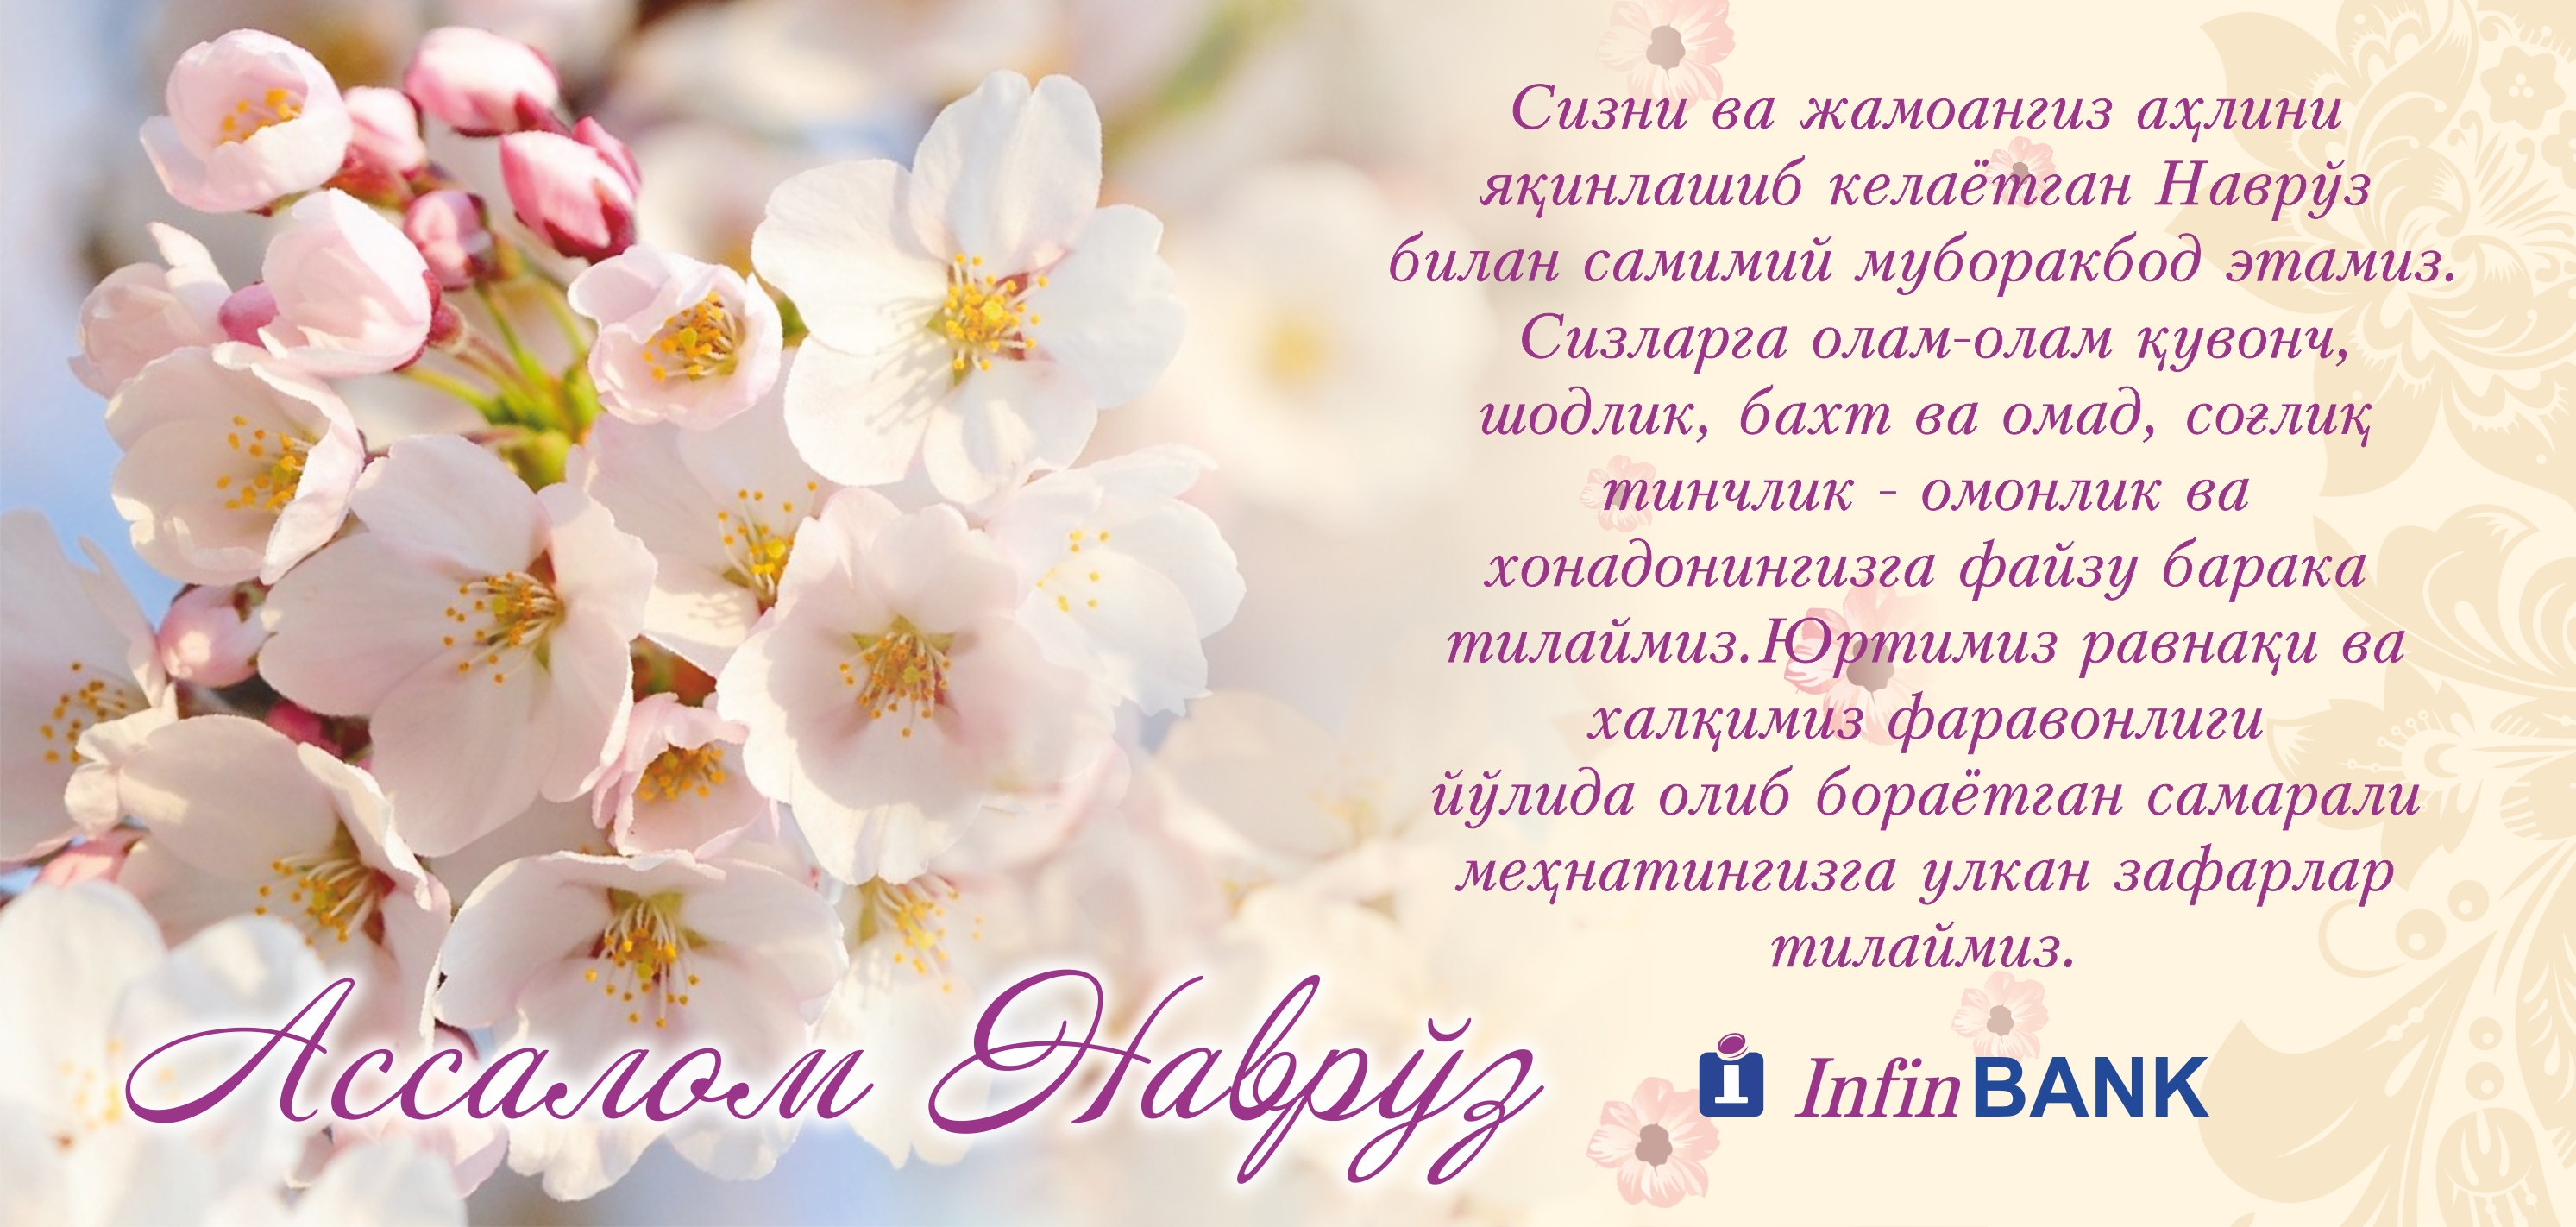 Красивый Текст На Узбекском Языке Для Поздравления